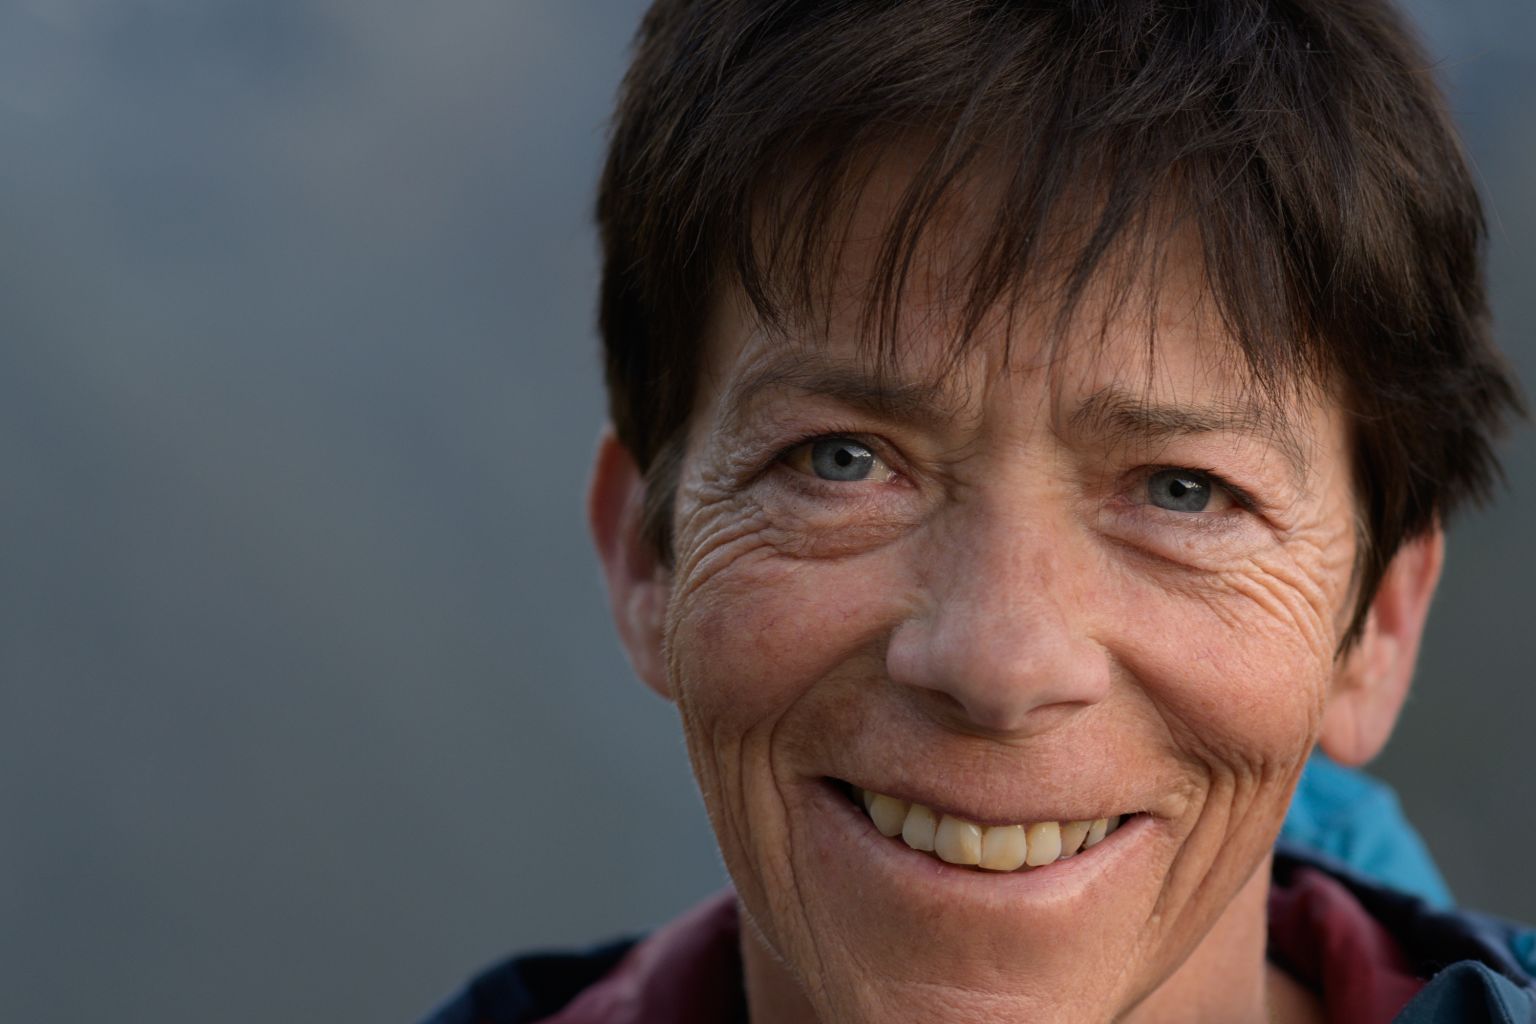 La gardienne Renata Schmid, 57 ans. « Chaque hôte doit se sentir bien ici », résume cette alpiniste passionnée.